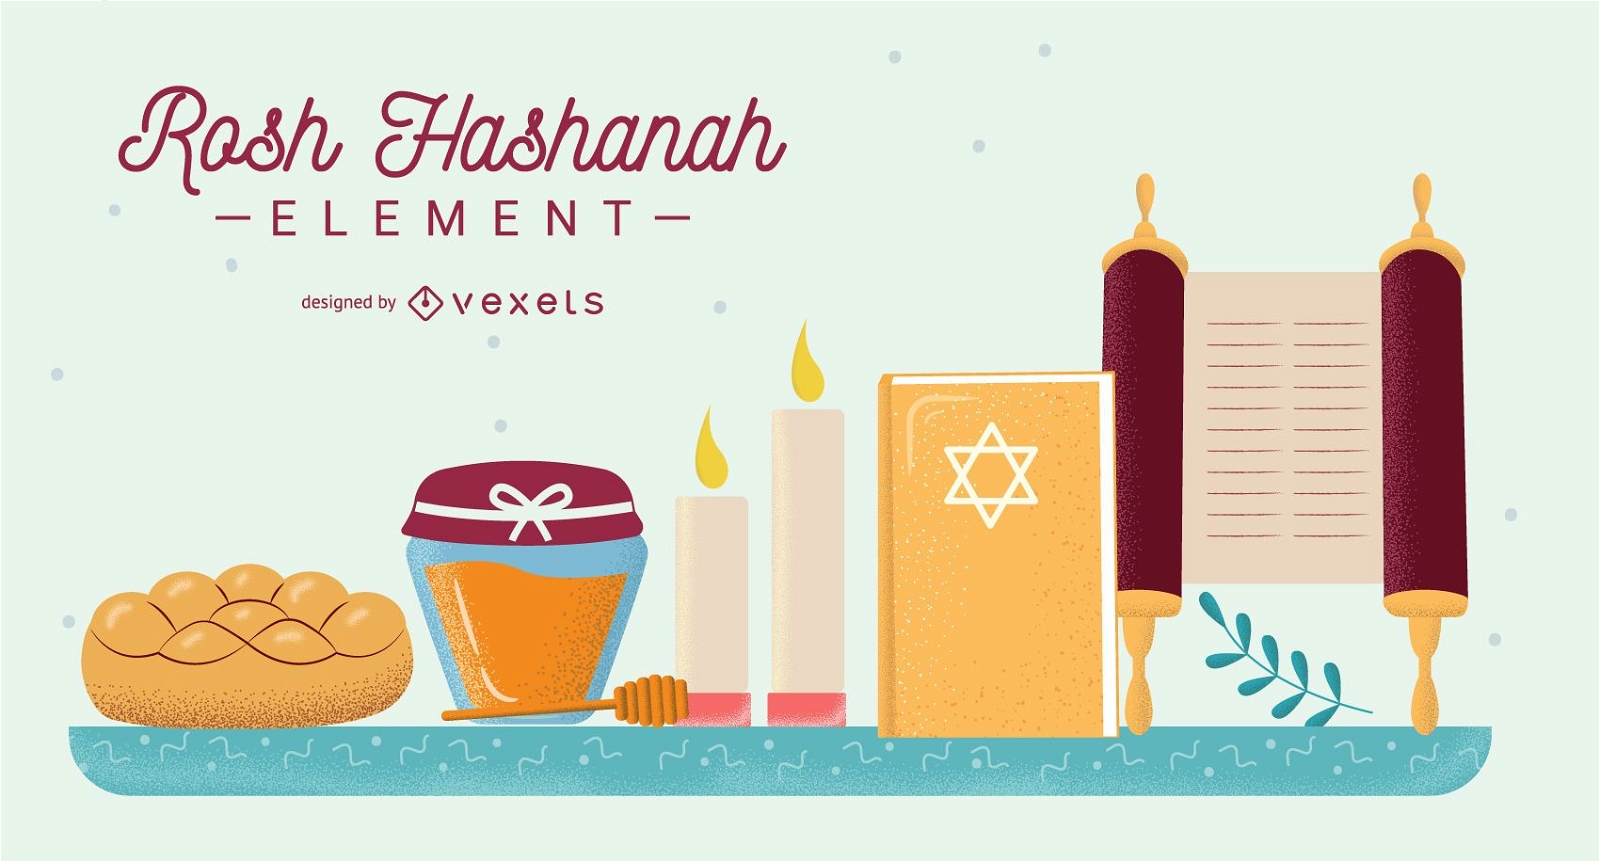 Rosh Hashanah elements set